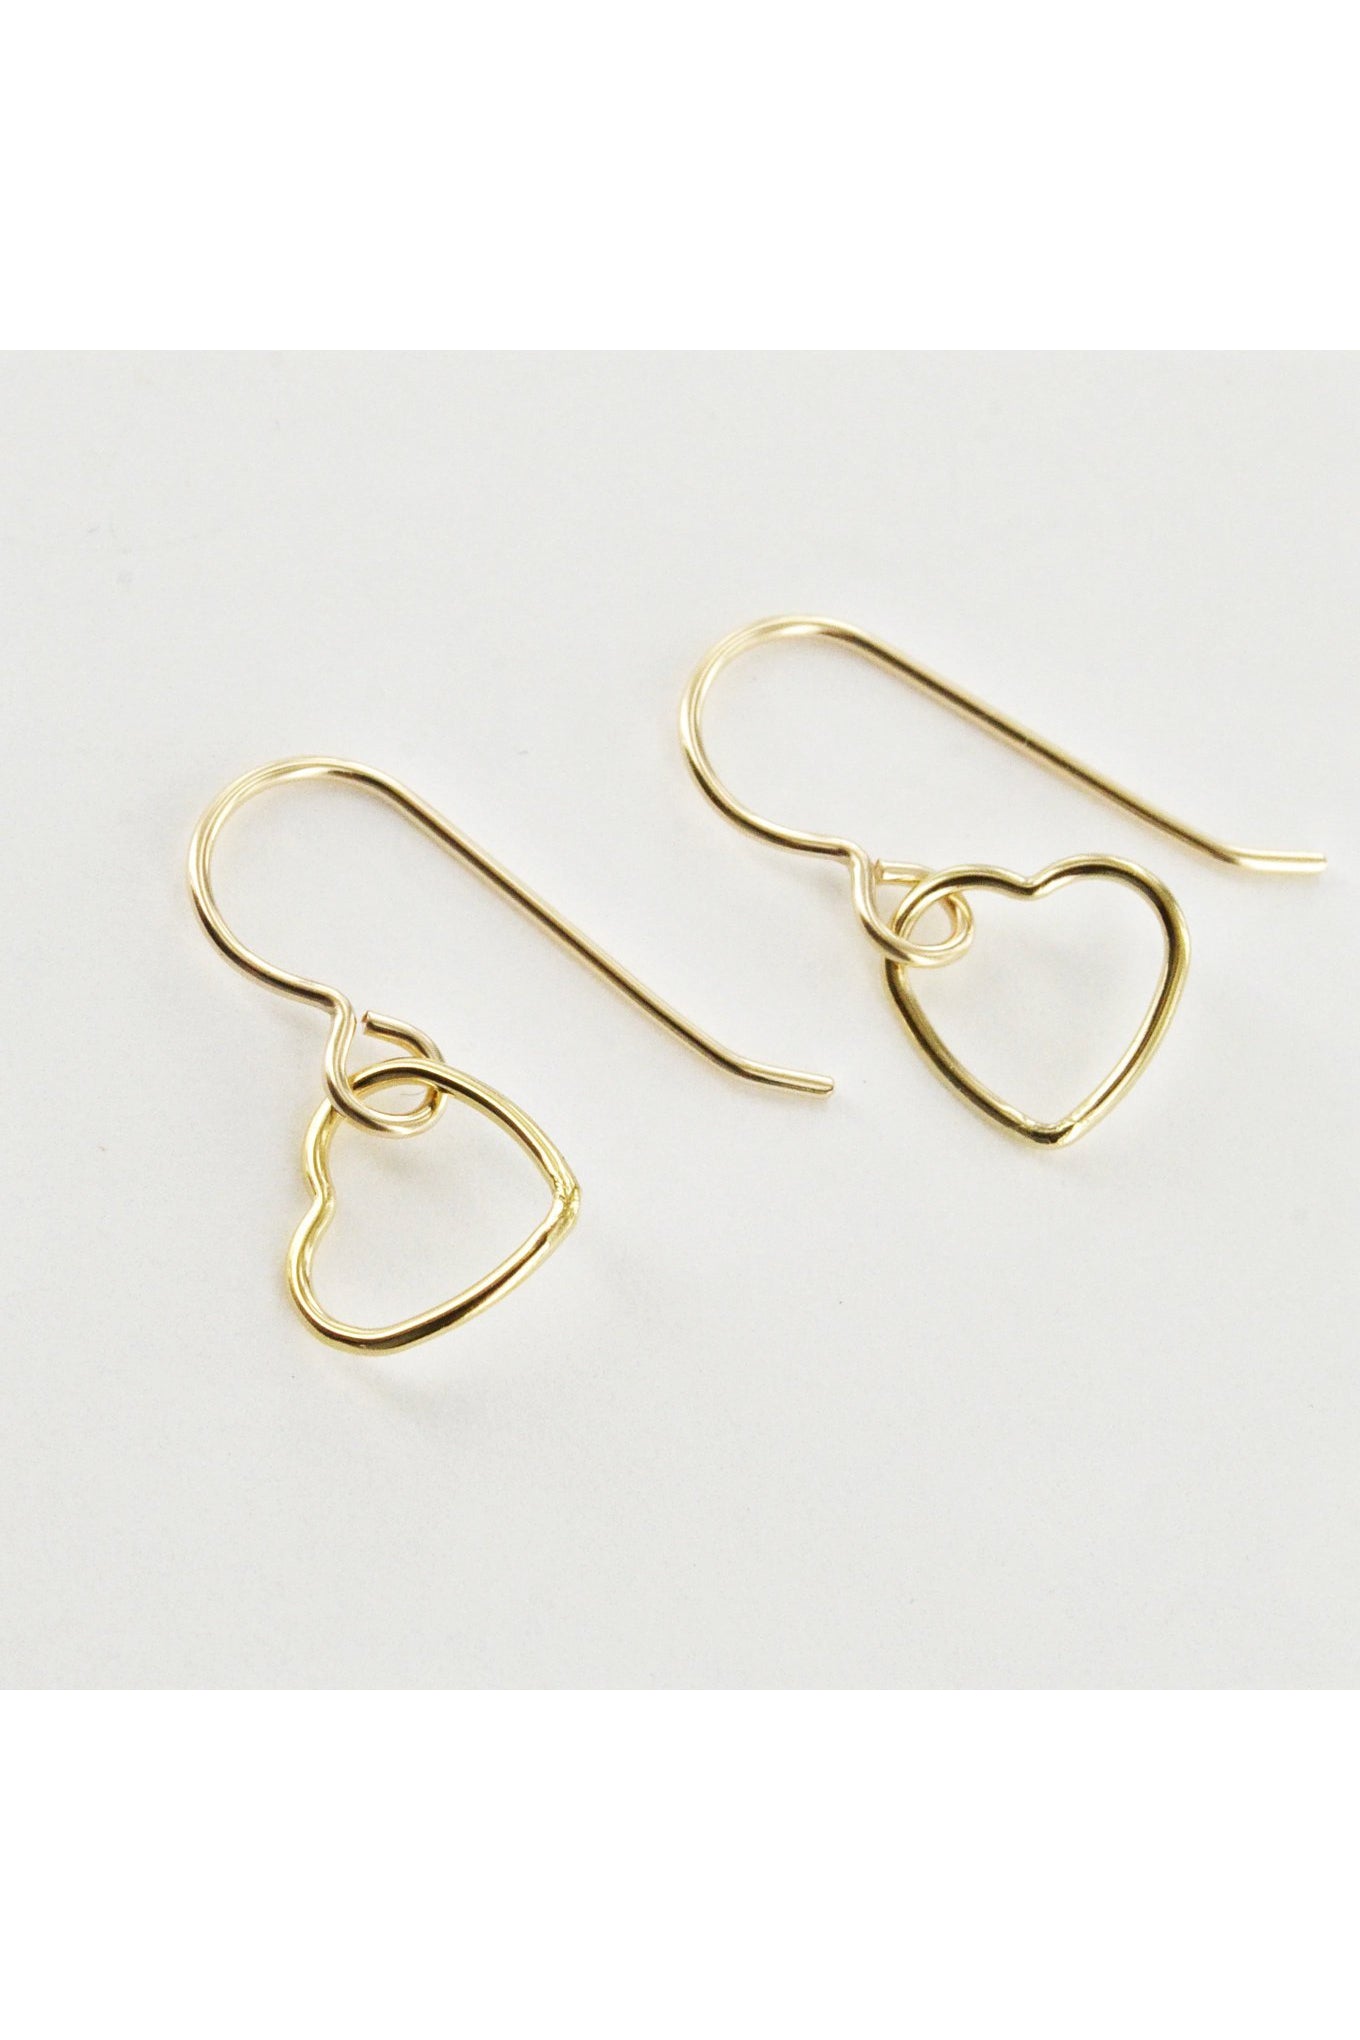 Dainty Gold Heart Dangle Earrings